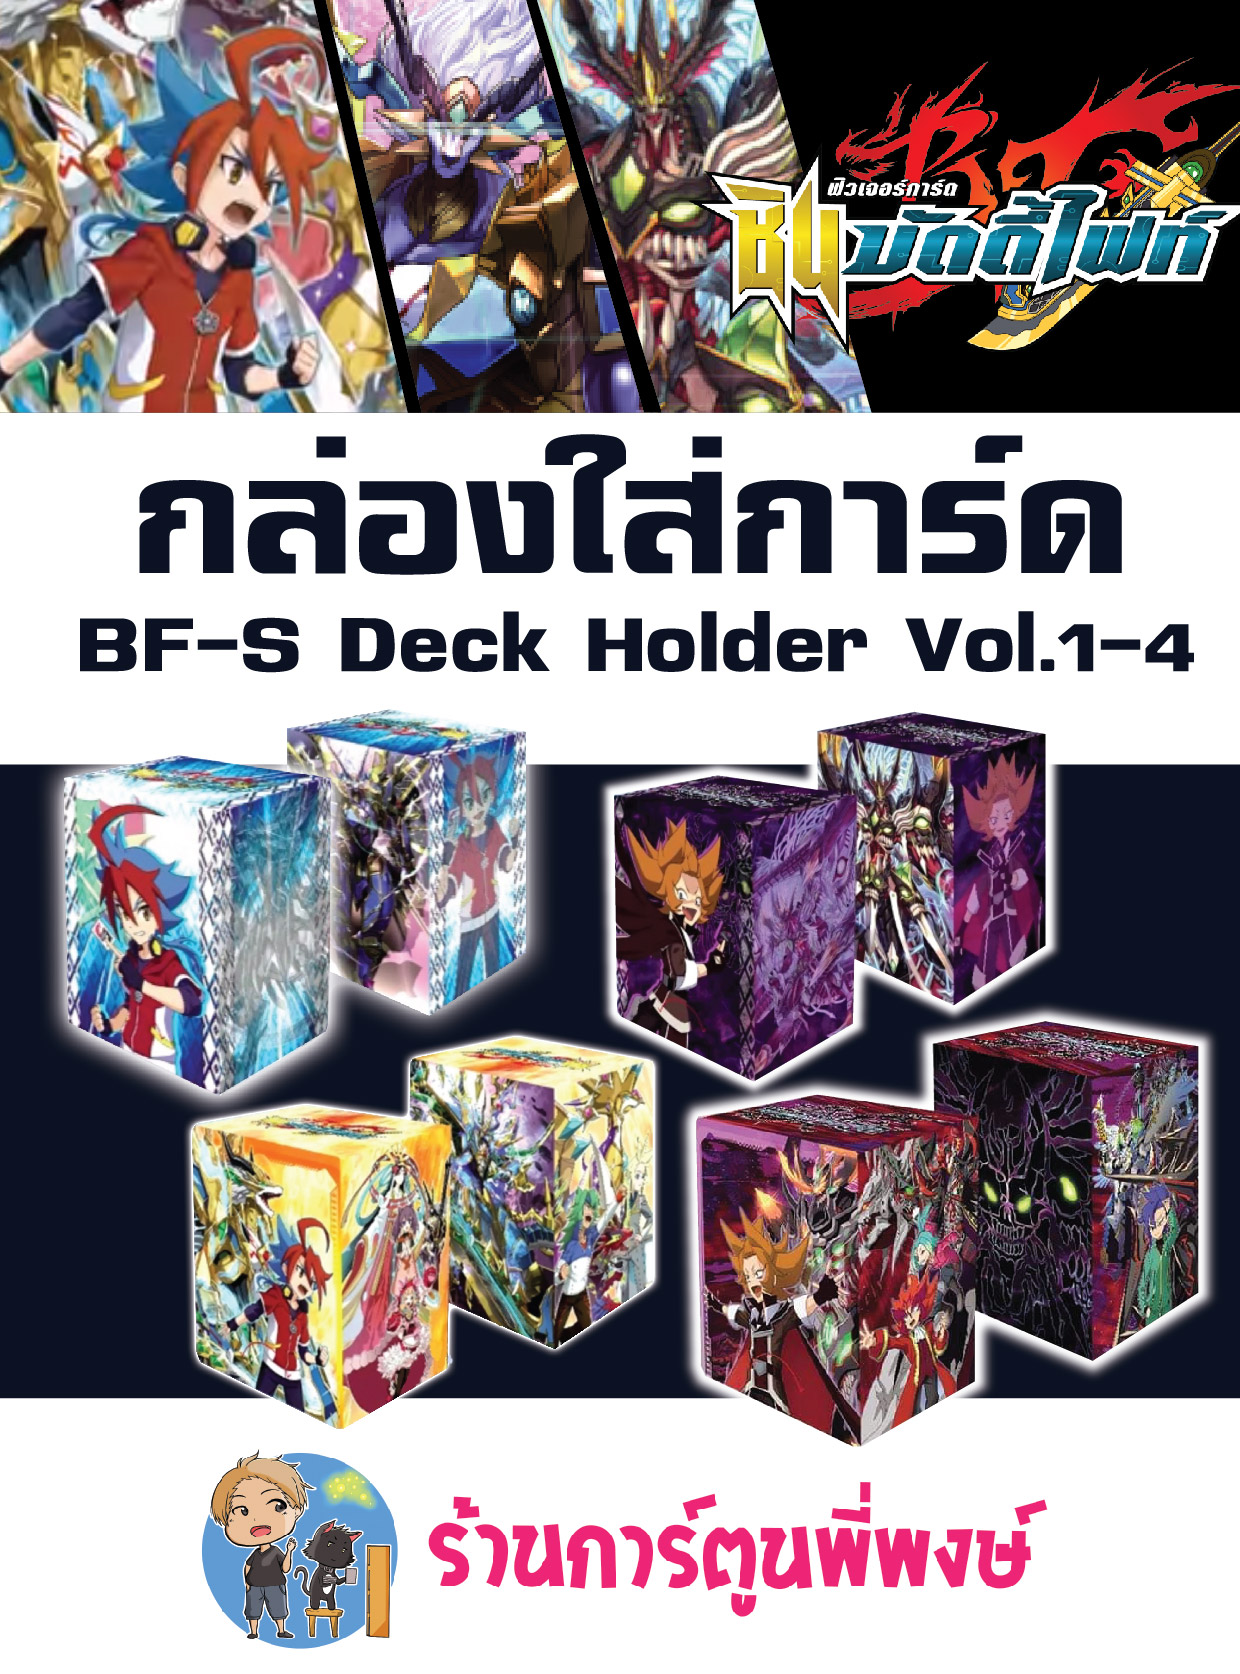 บัดดี้ไฟท์ BF-S Deck Holder Vol.1 กาก้า Vol.2 แวนิตี้ Vol.3 ยูกะทีม Vol.4  กล่องใส่การ์ด Buddyfight ภาค S ชิน